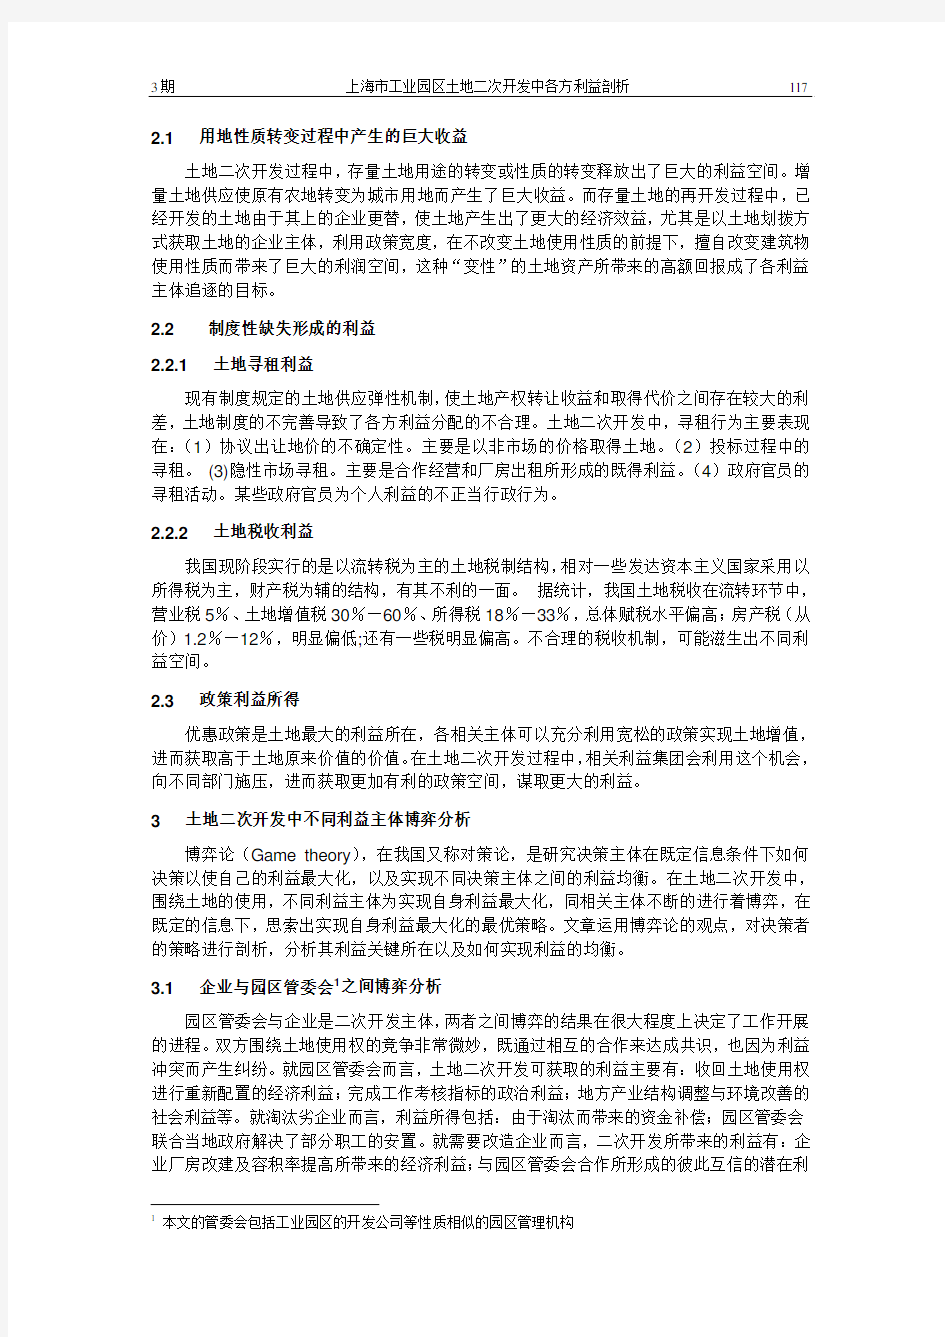 上海市工业园区土地二次开发中各方利益剖析——以漕河泾新兴技术开发区为例 0703_03